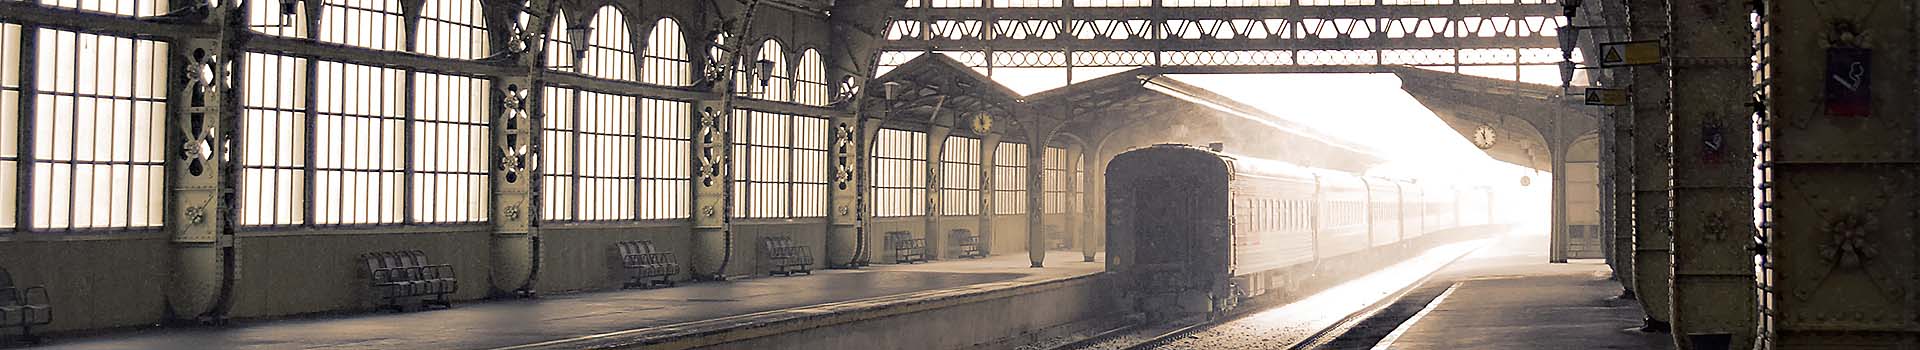 Restauratie oud station